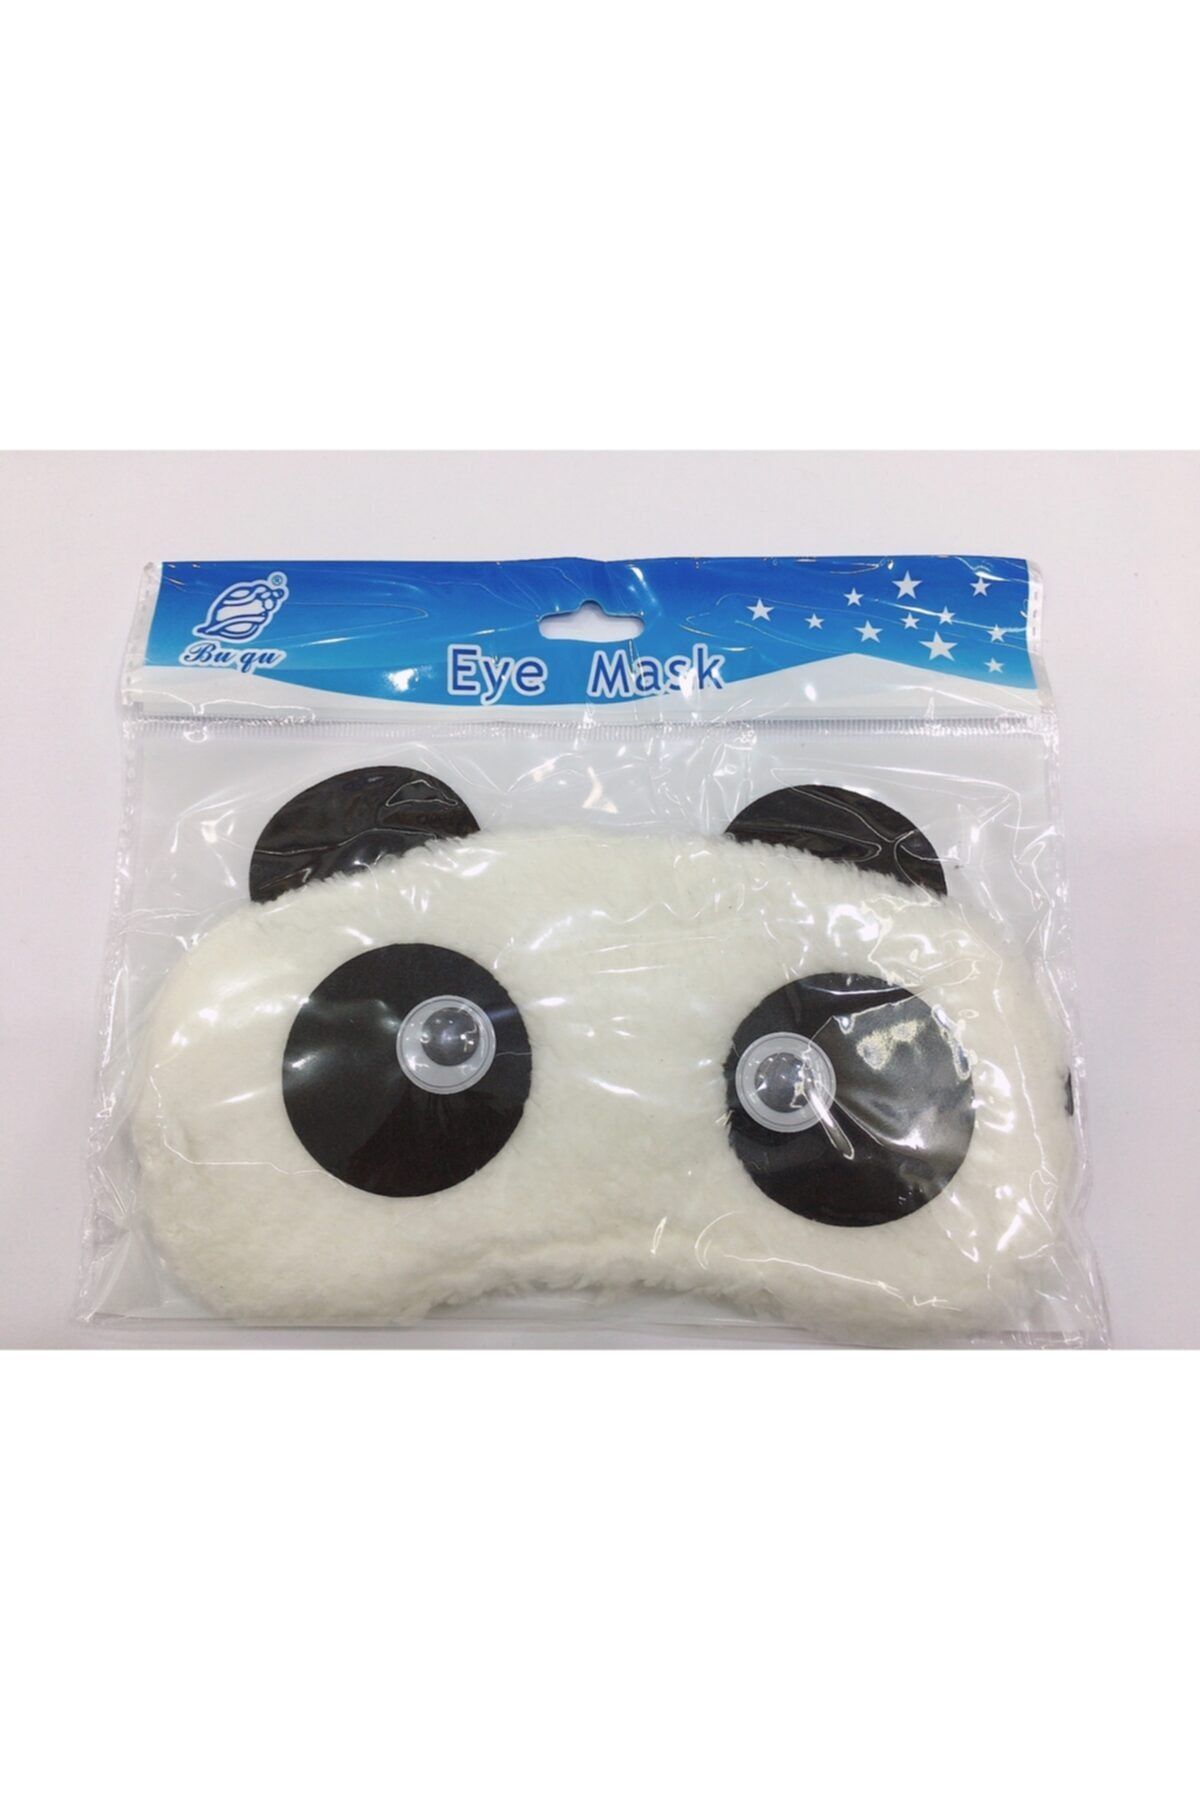 İNCİ AKSESUAR Uyku Bandı Panda Model